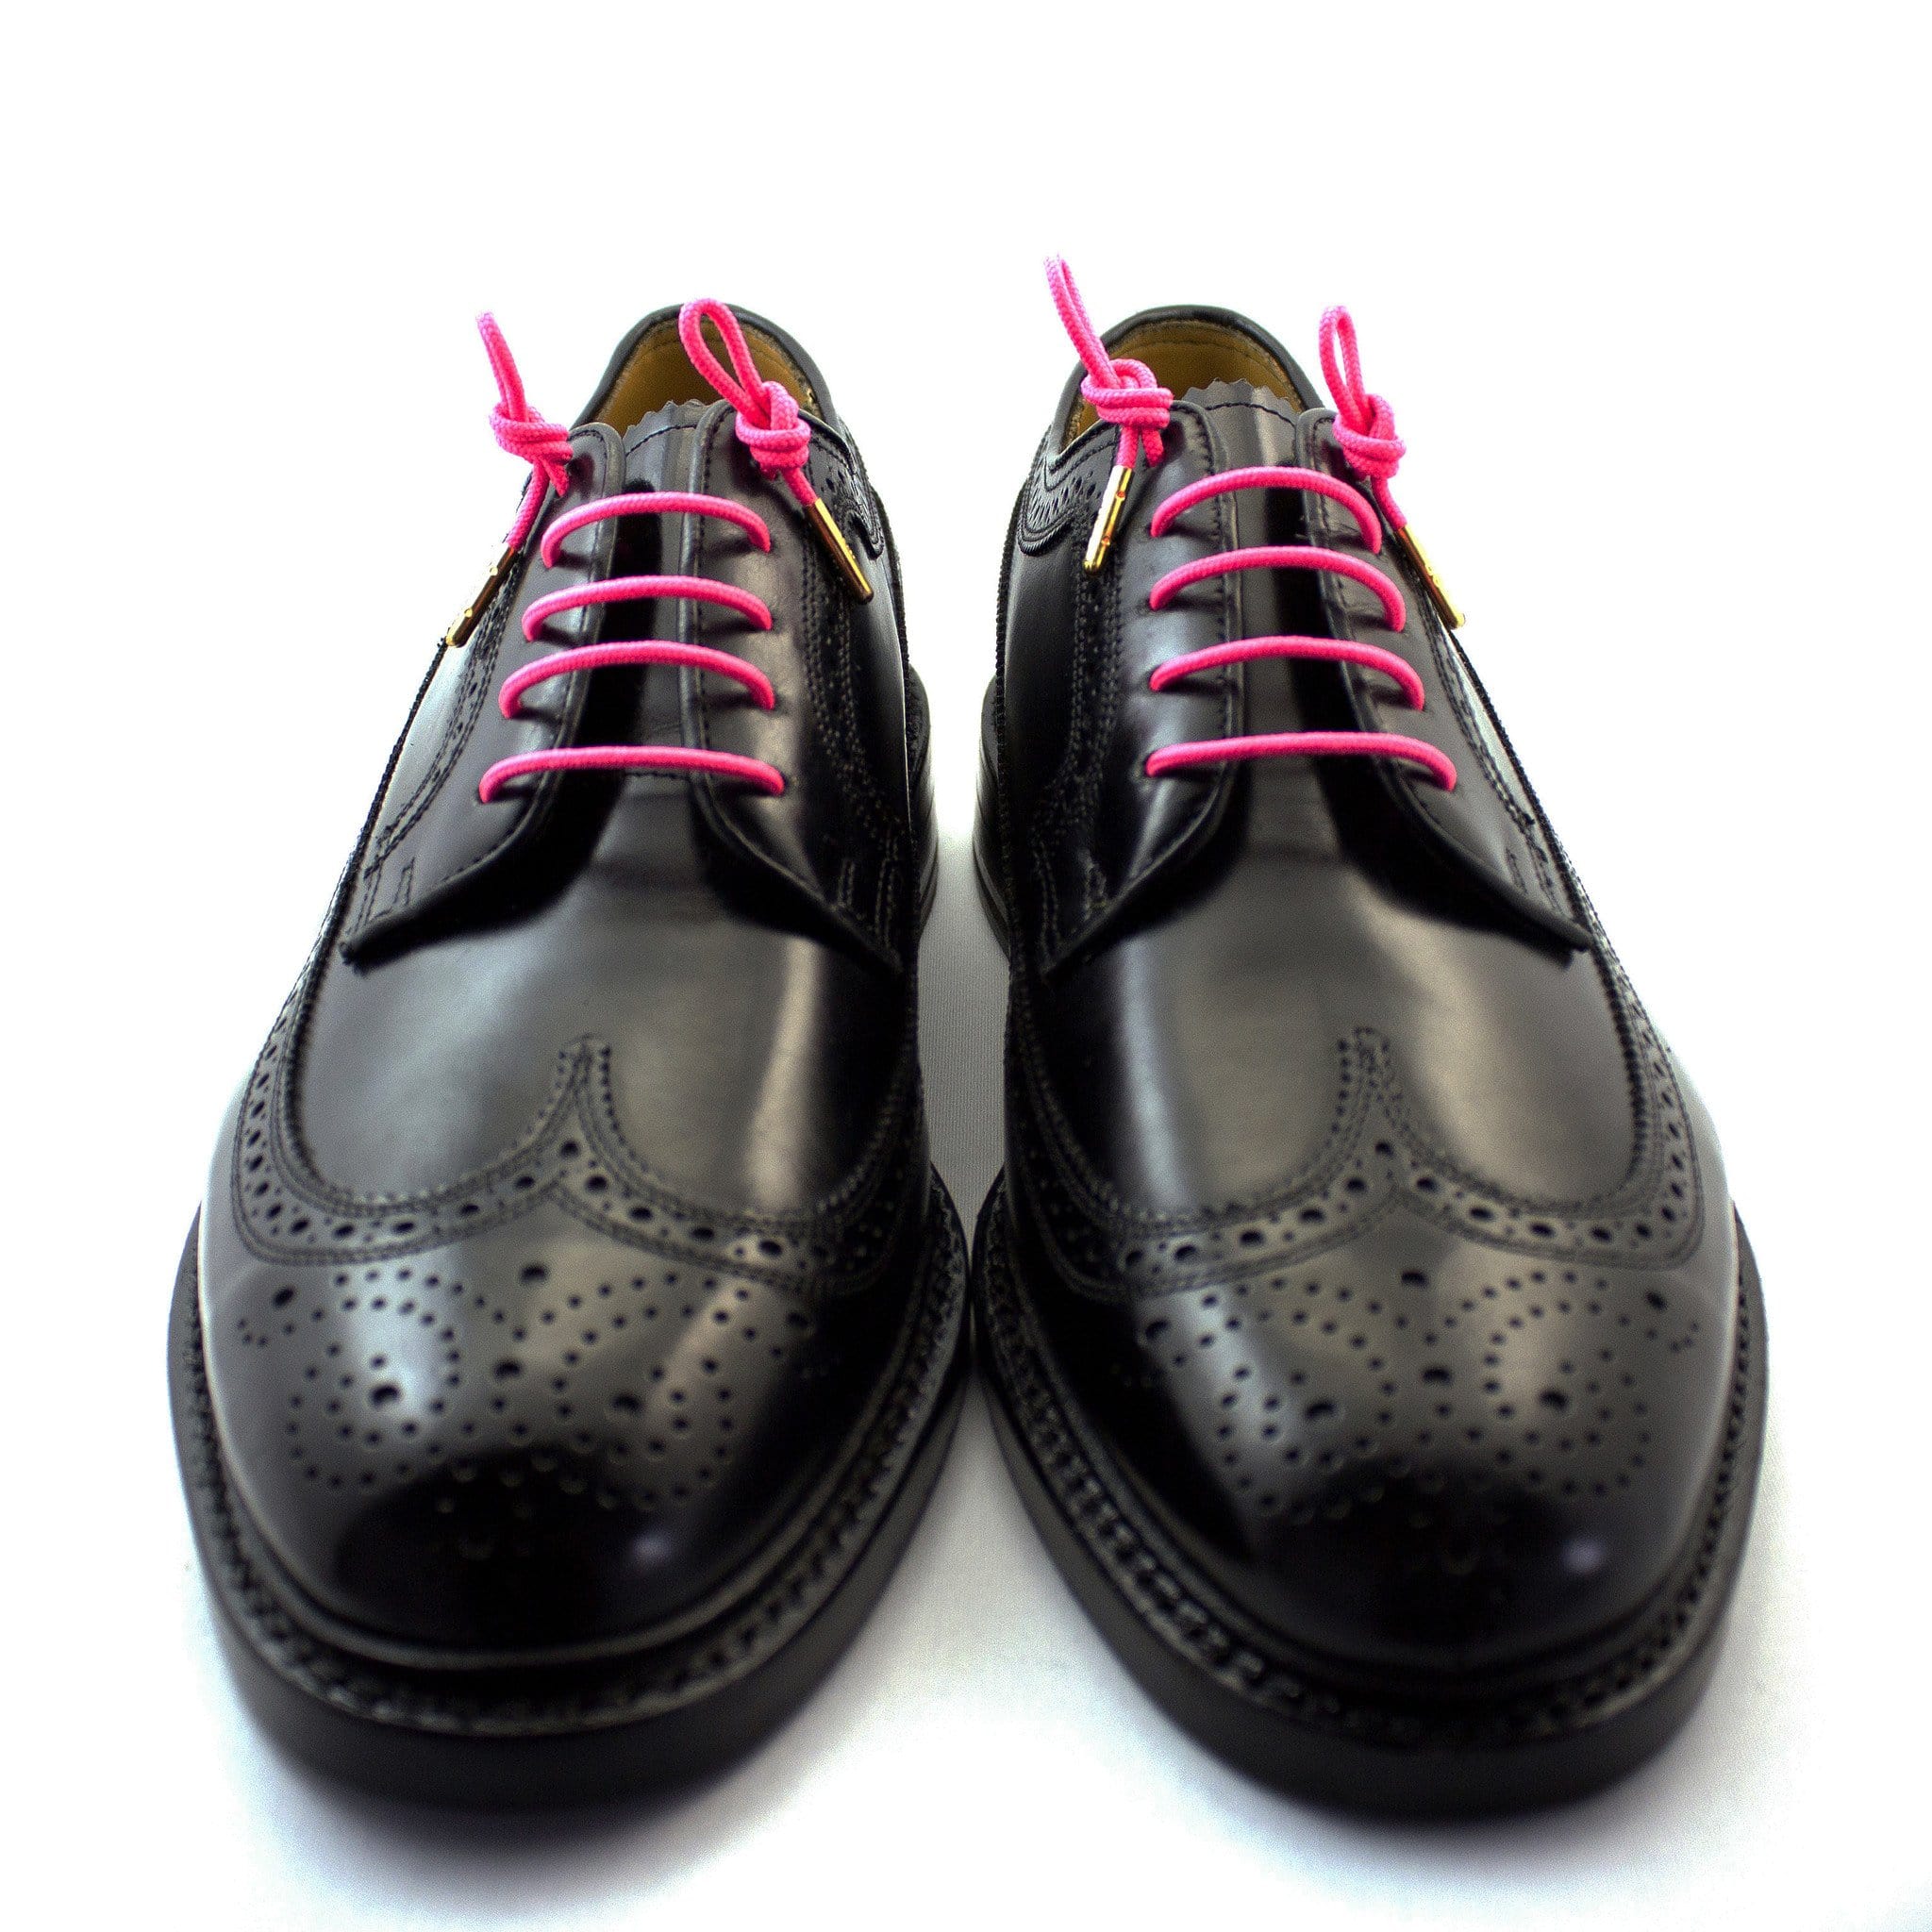 black shoes pink laces